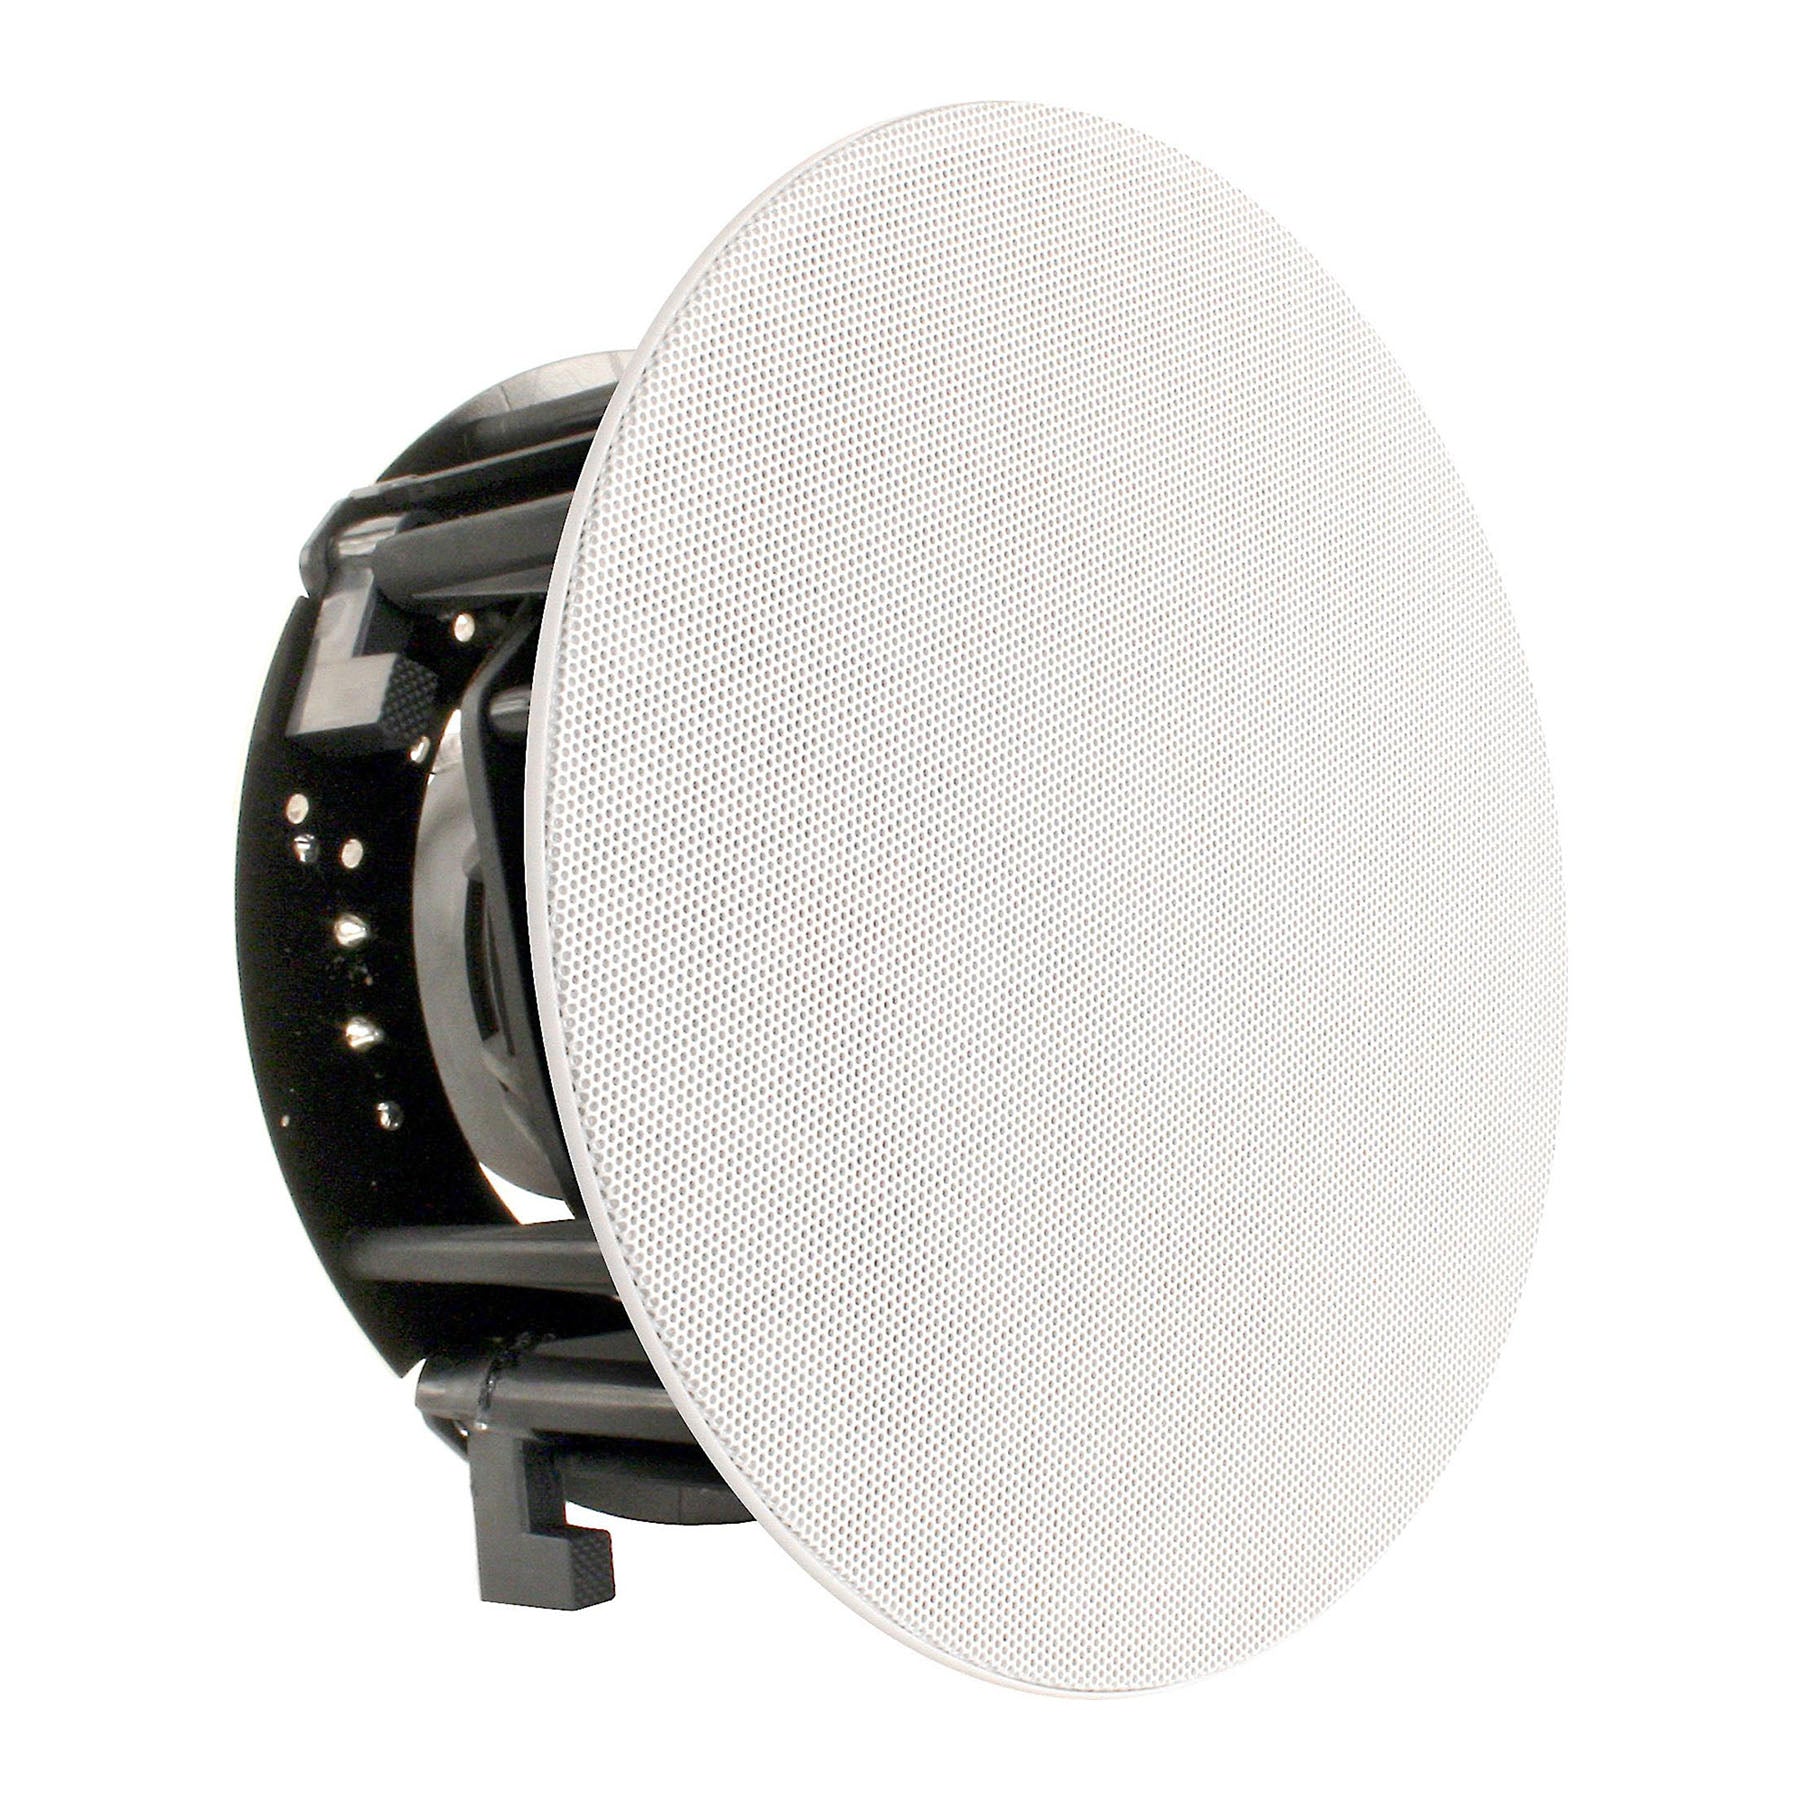 Revel C563 6 ½" In-Ceiling Loudspeaker